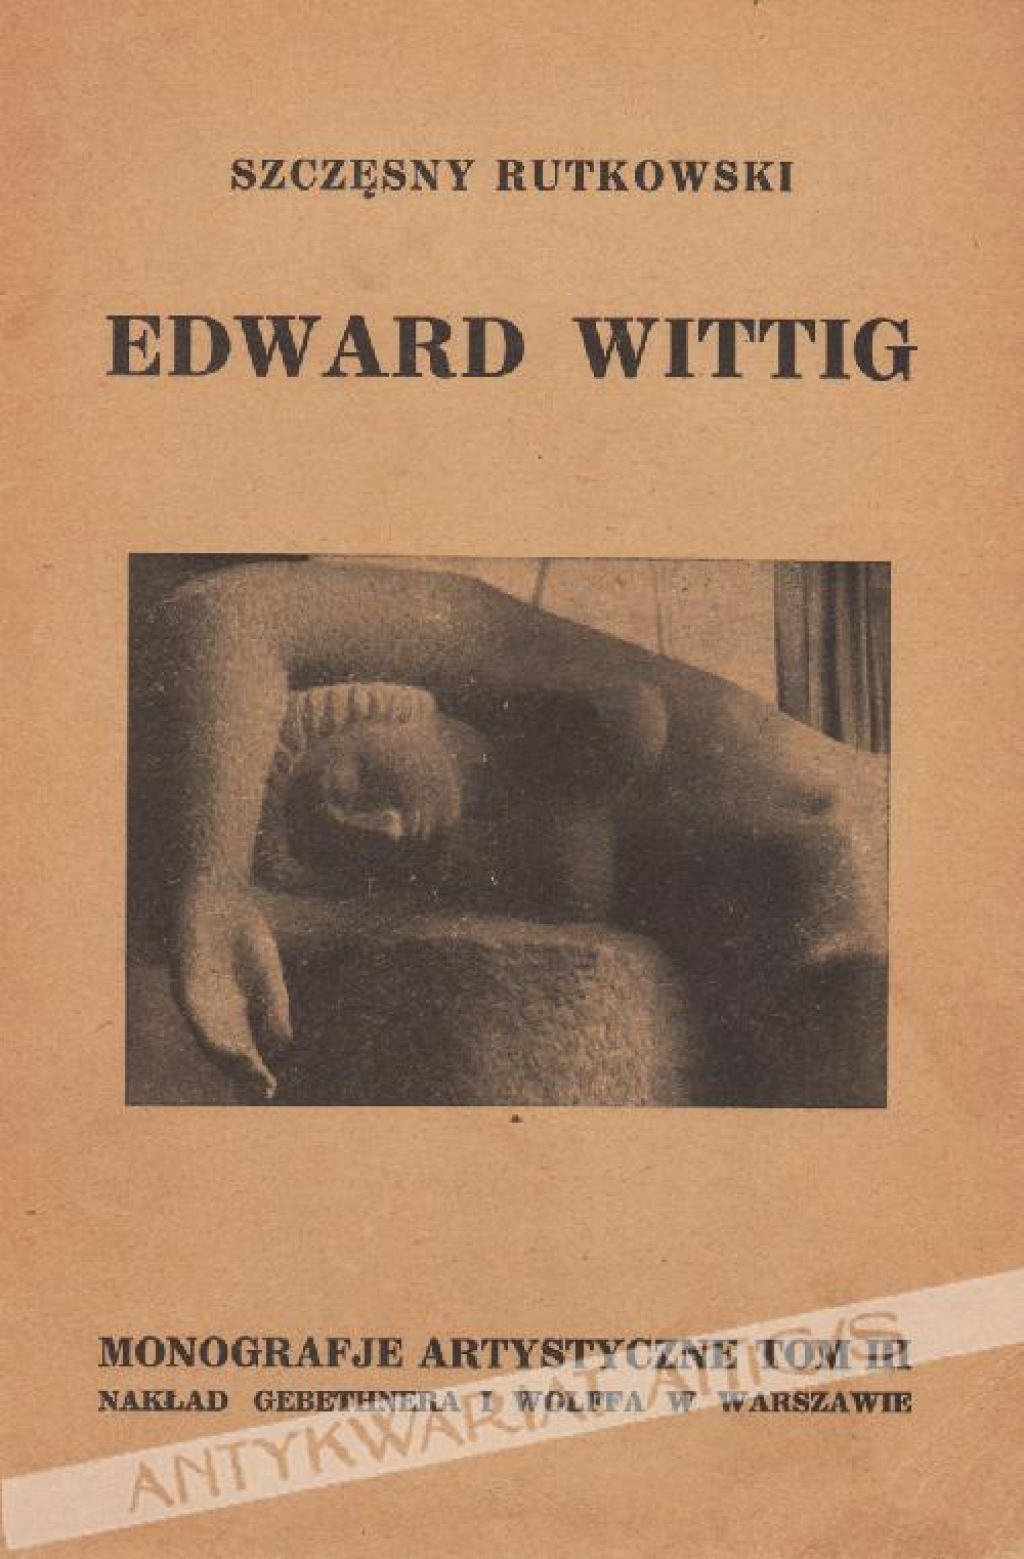 Edward Wittig